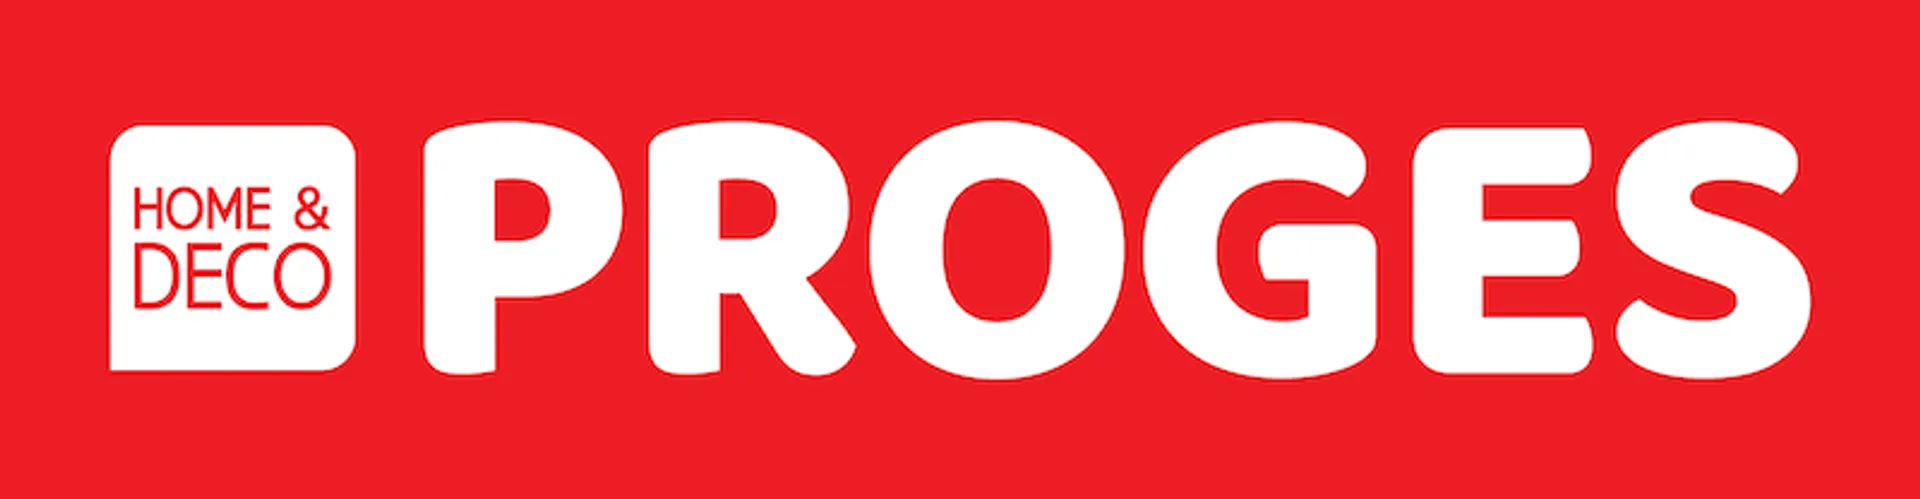 PROGES logo